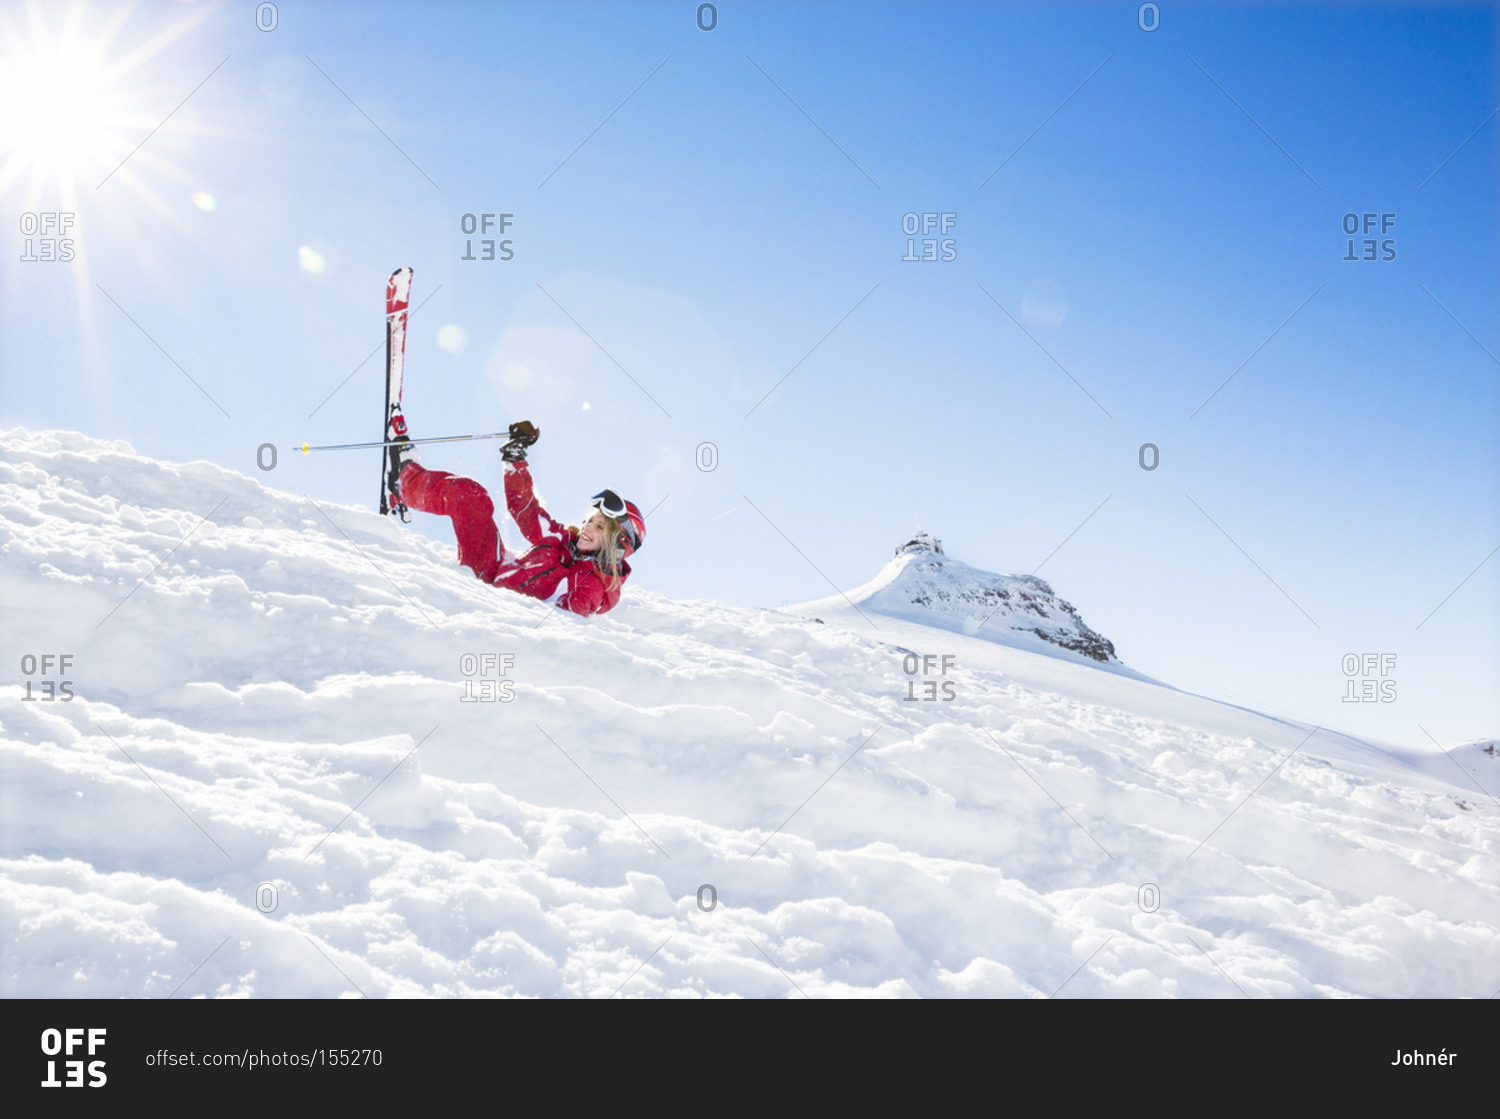 Woman falling while skiing